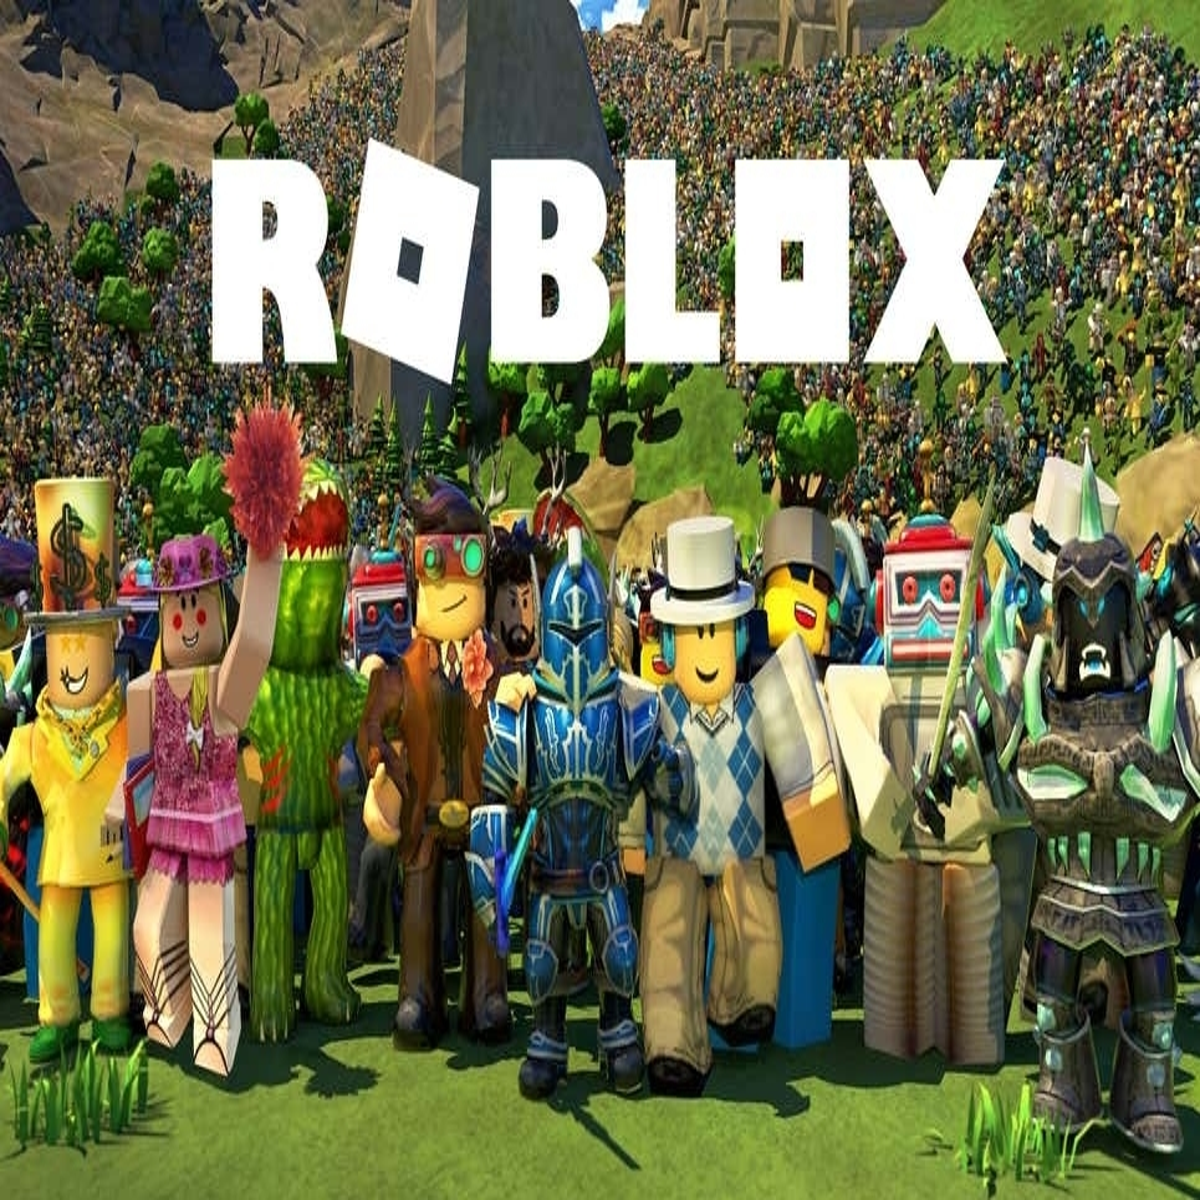 Roblox: Lista de códigos gratis para los mejores juegos a enero 2022